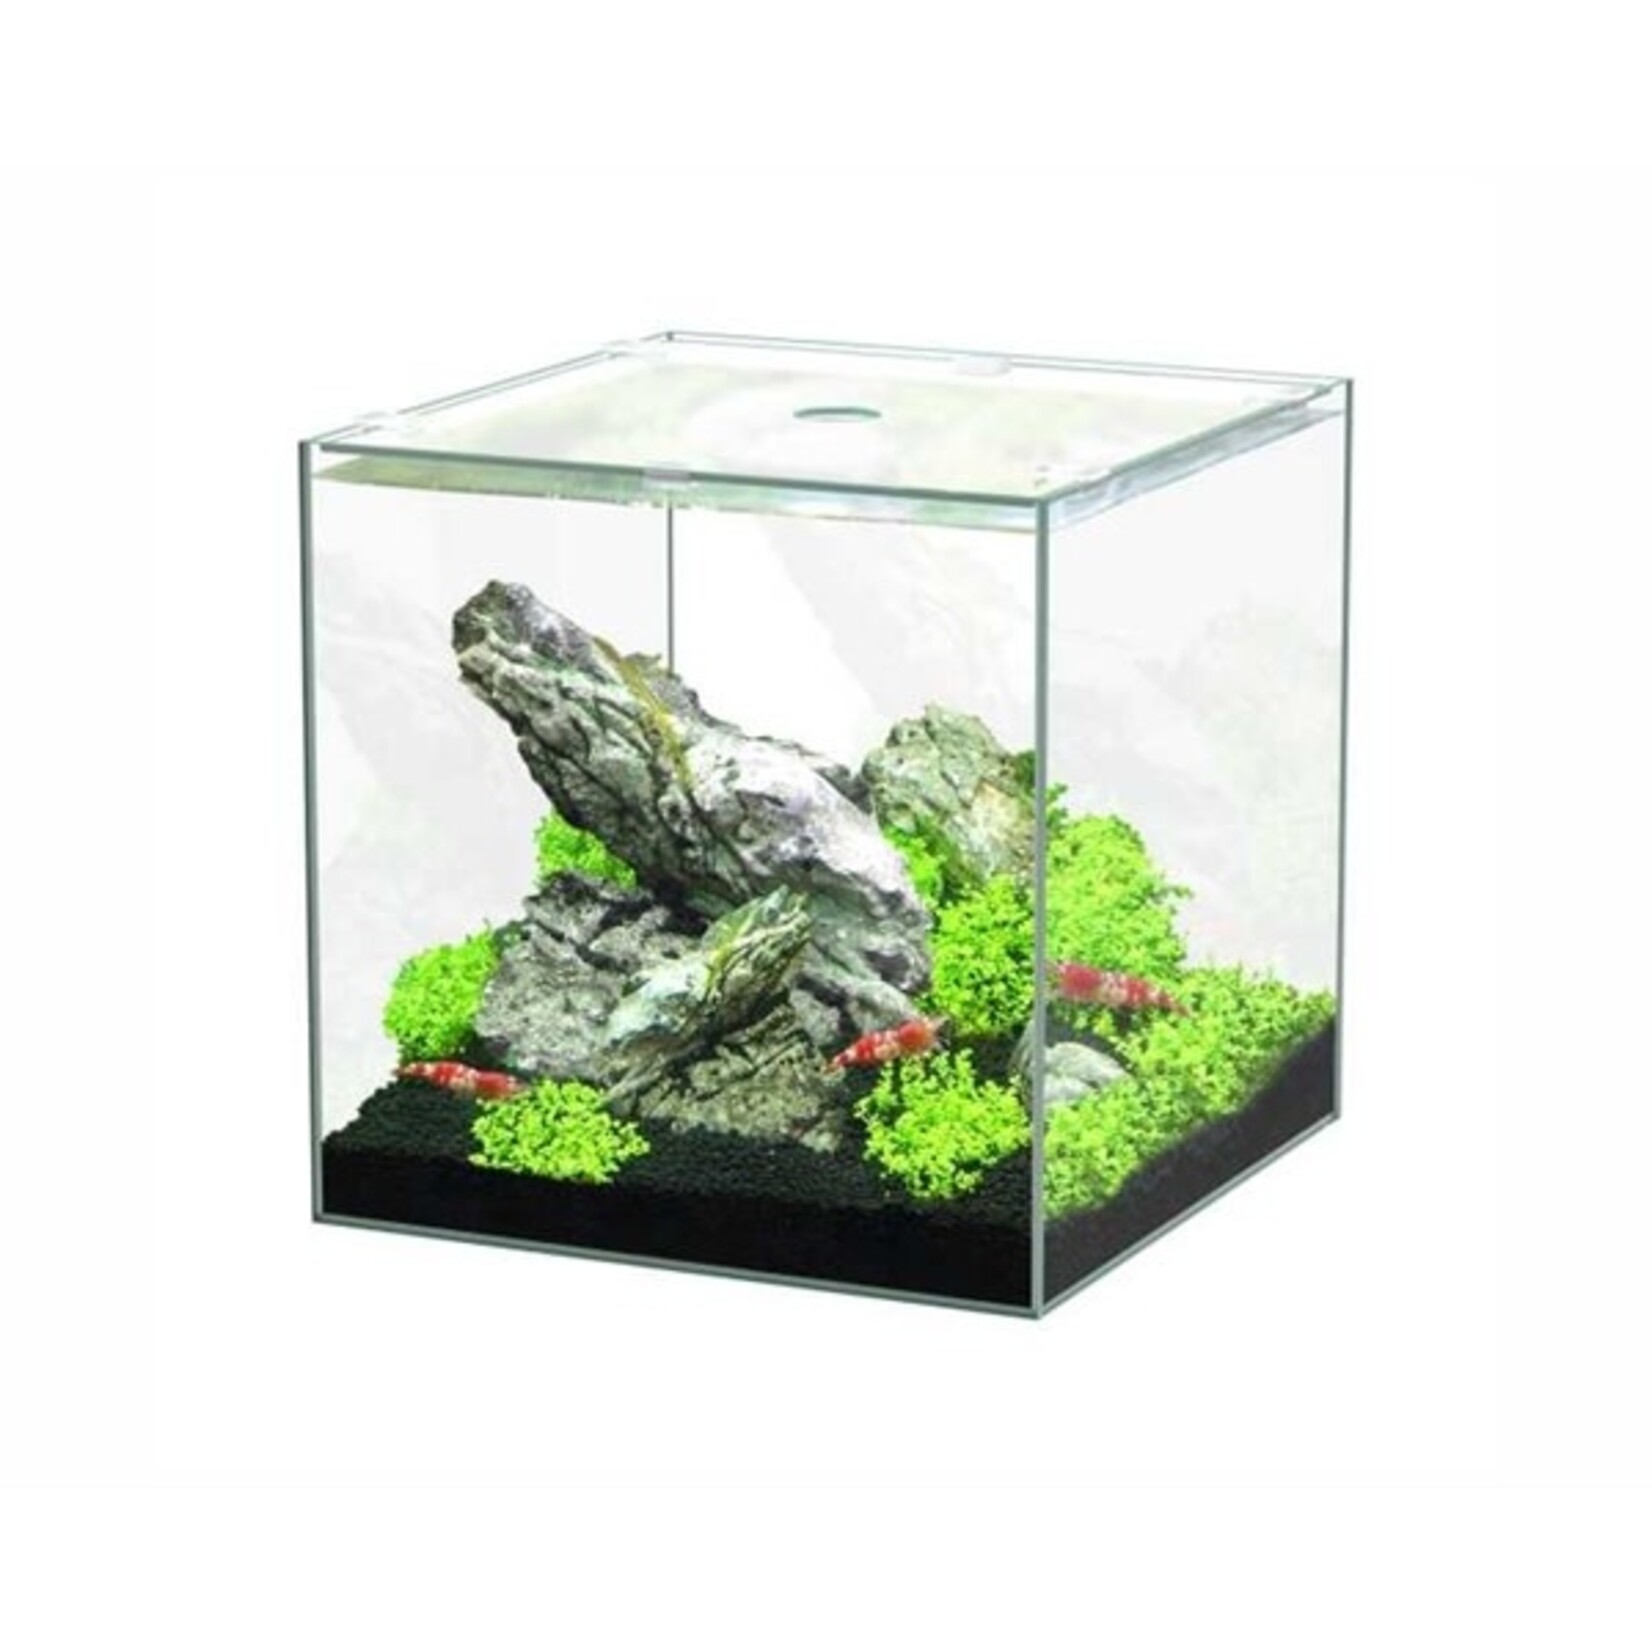 Aquatlantis Aquarium volglas kubus 15 l 25.5x26.1x25.5 cm